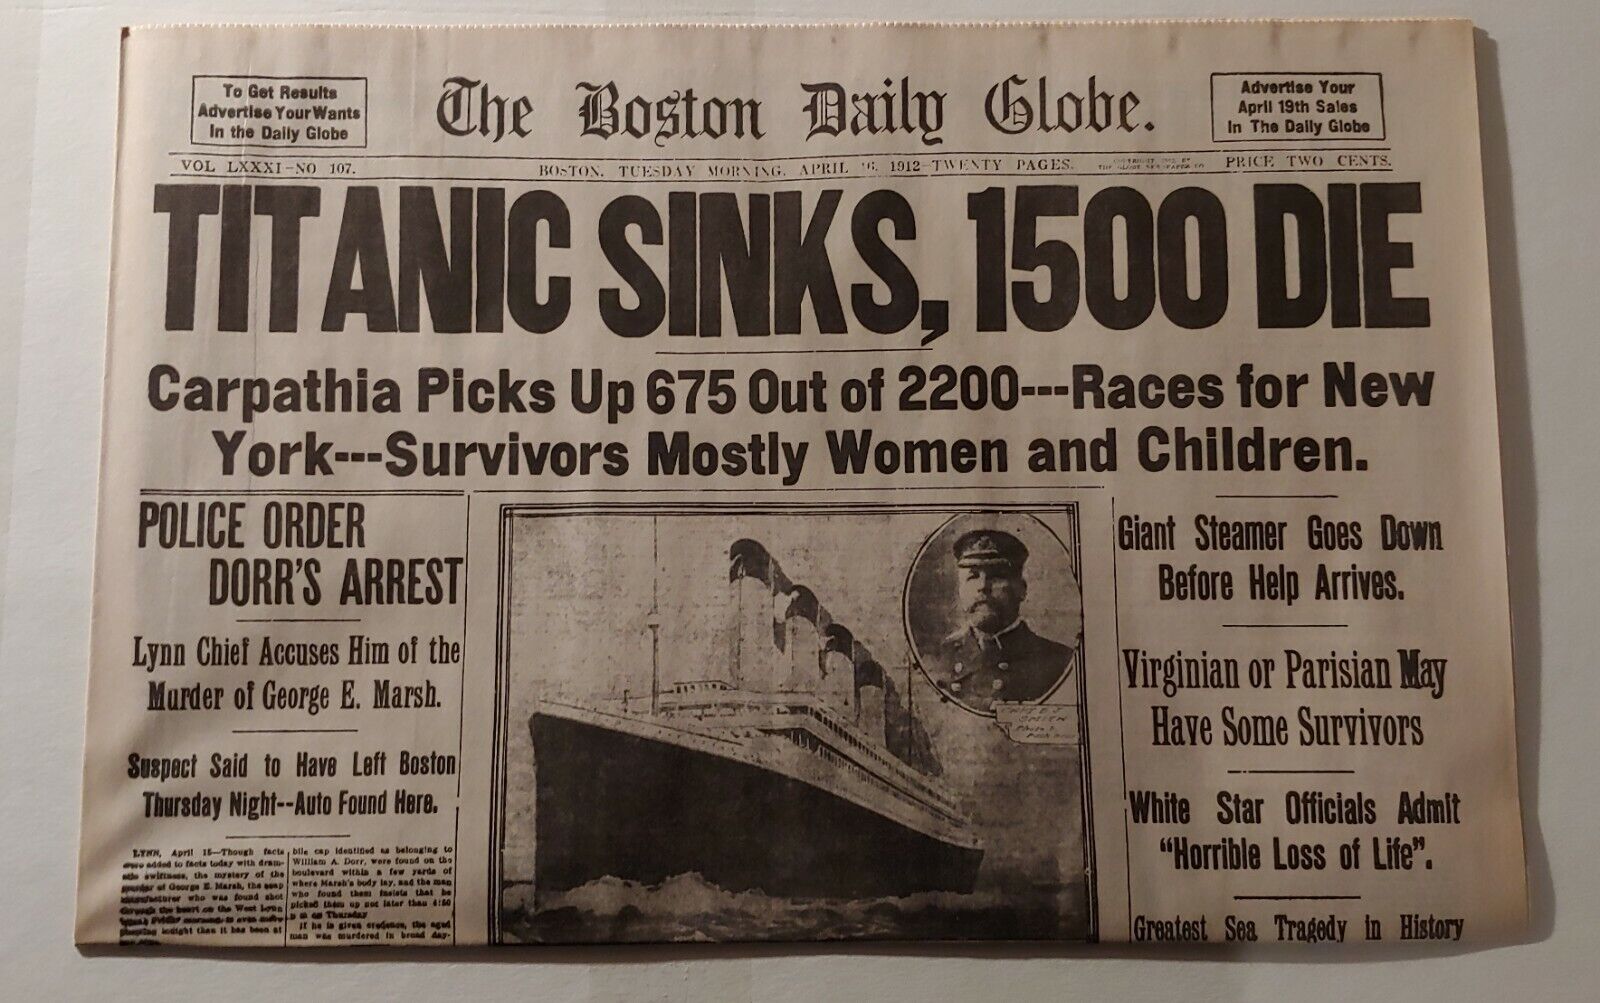 APR 16, 1912 BOSTON GLOBE NEWSPAPER (REPRINT)- TITANIC SINKS, 1500 DIE